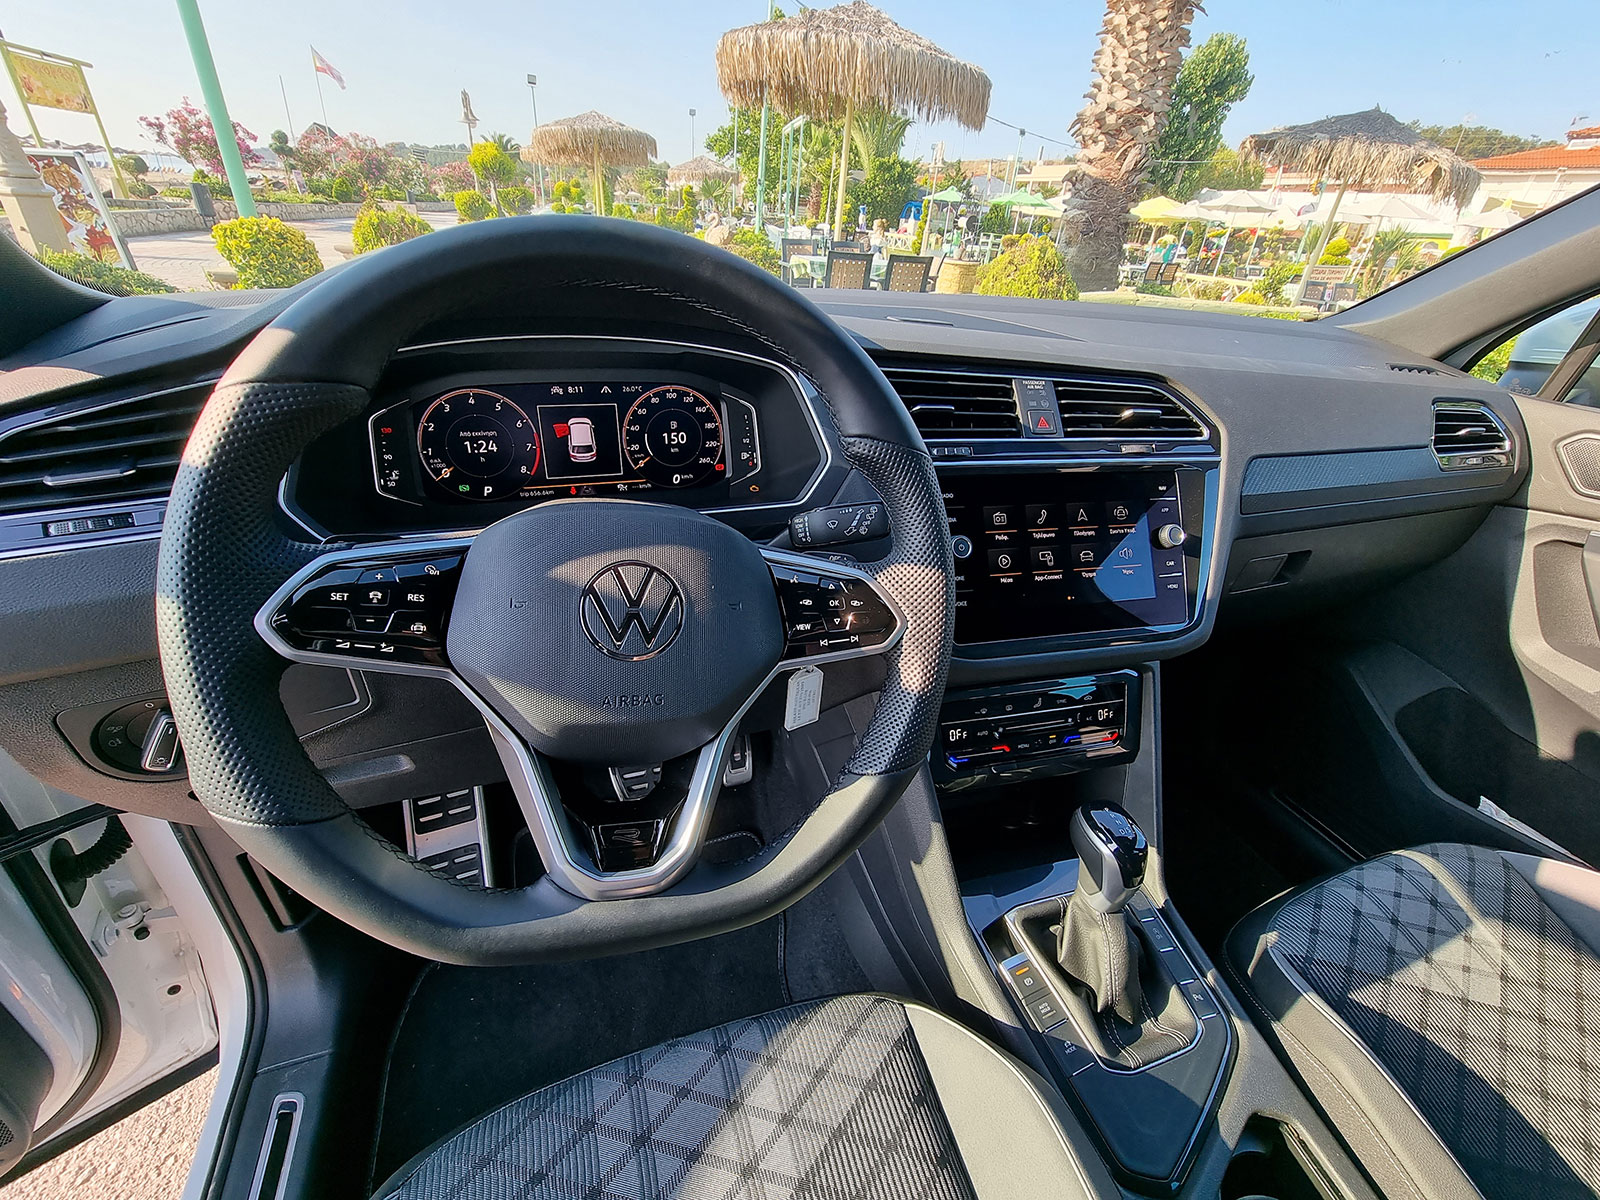 VW Tiguan Tech Road Trip June 2021